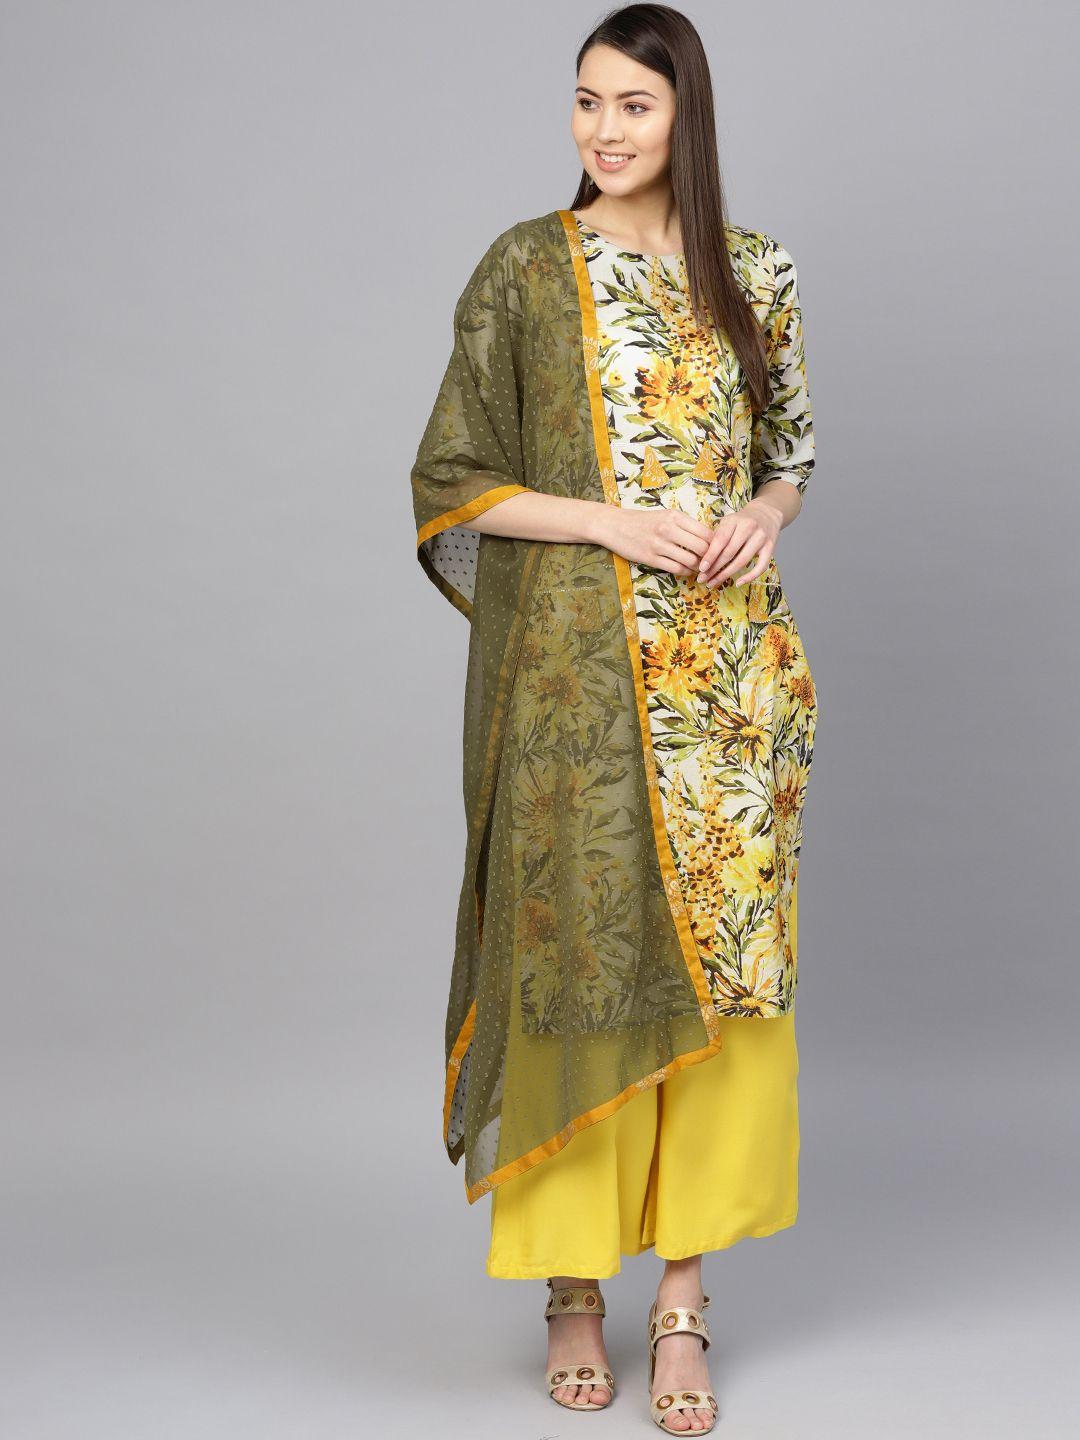 ahalyaa women off-white & mustard yellow printed kurta with palazzos & dupatta